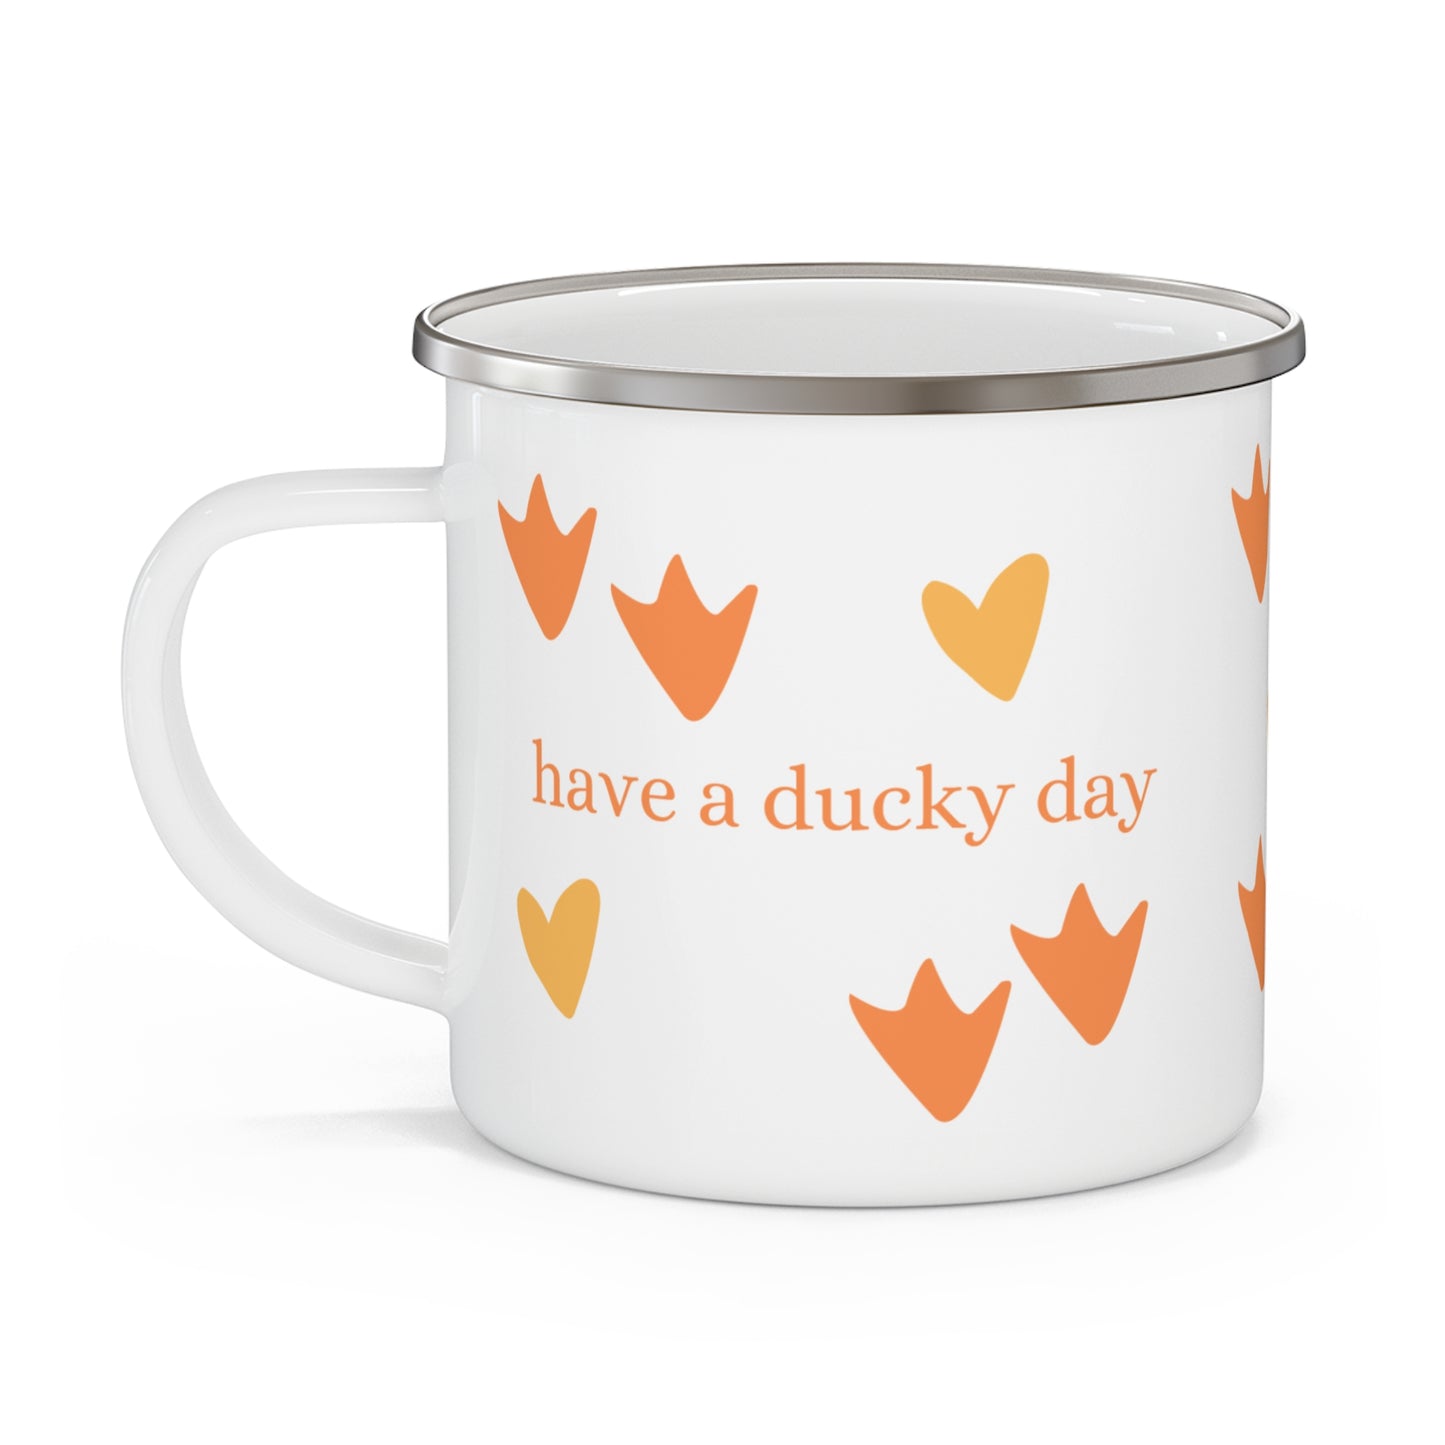 have a ducky day - Enamel Farmhouse Style Mug